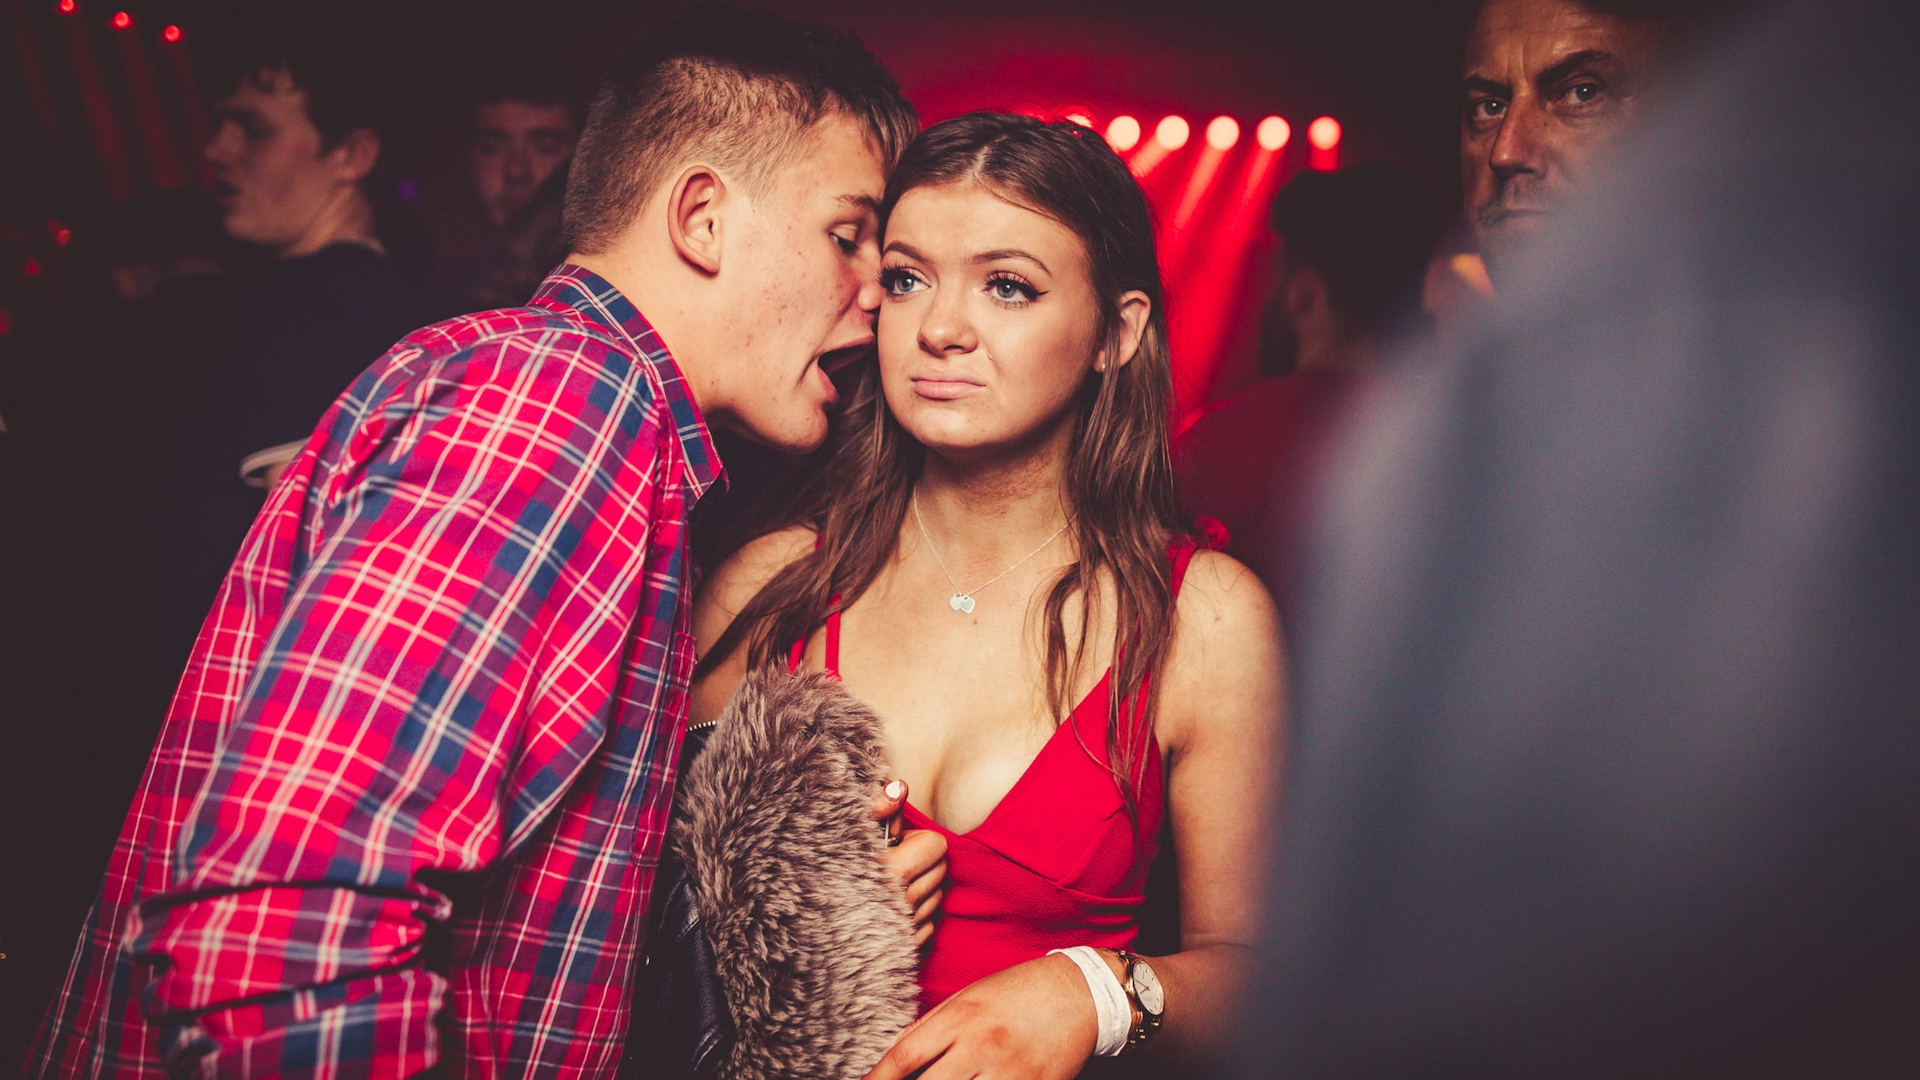 'Guy Explaining' Nightclub Meme to Be Sold as Ethereum NFT